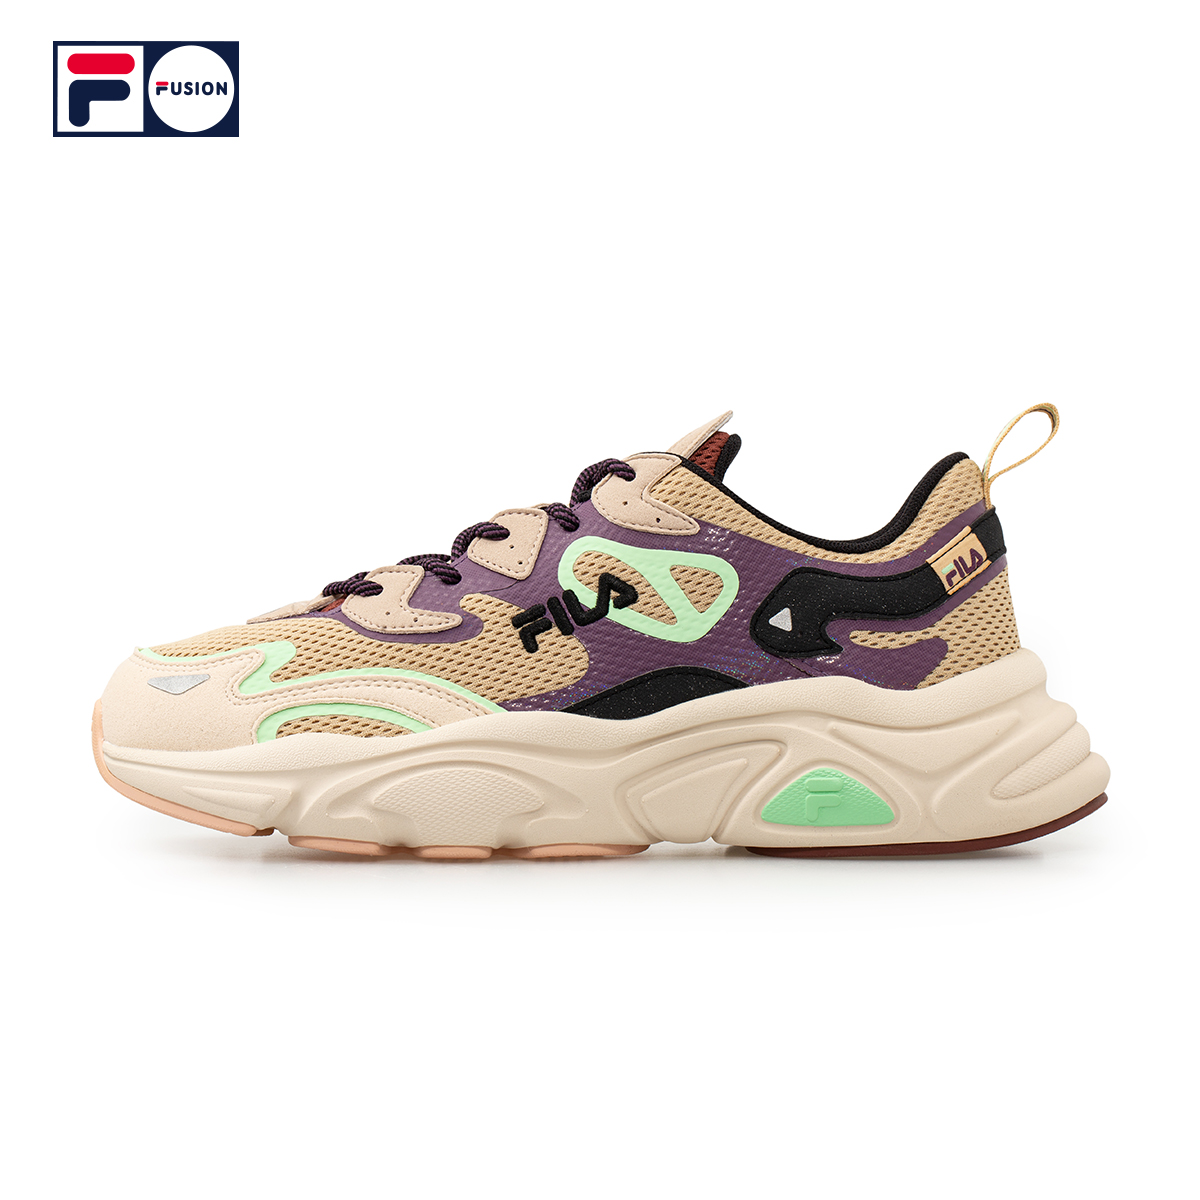 Fila fusion. Fila Fusion Shoes. Fila Fusion кроссовки. Fila Fusion ray 2. Fila Fusion Casper.